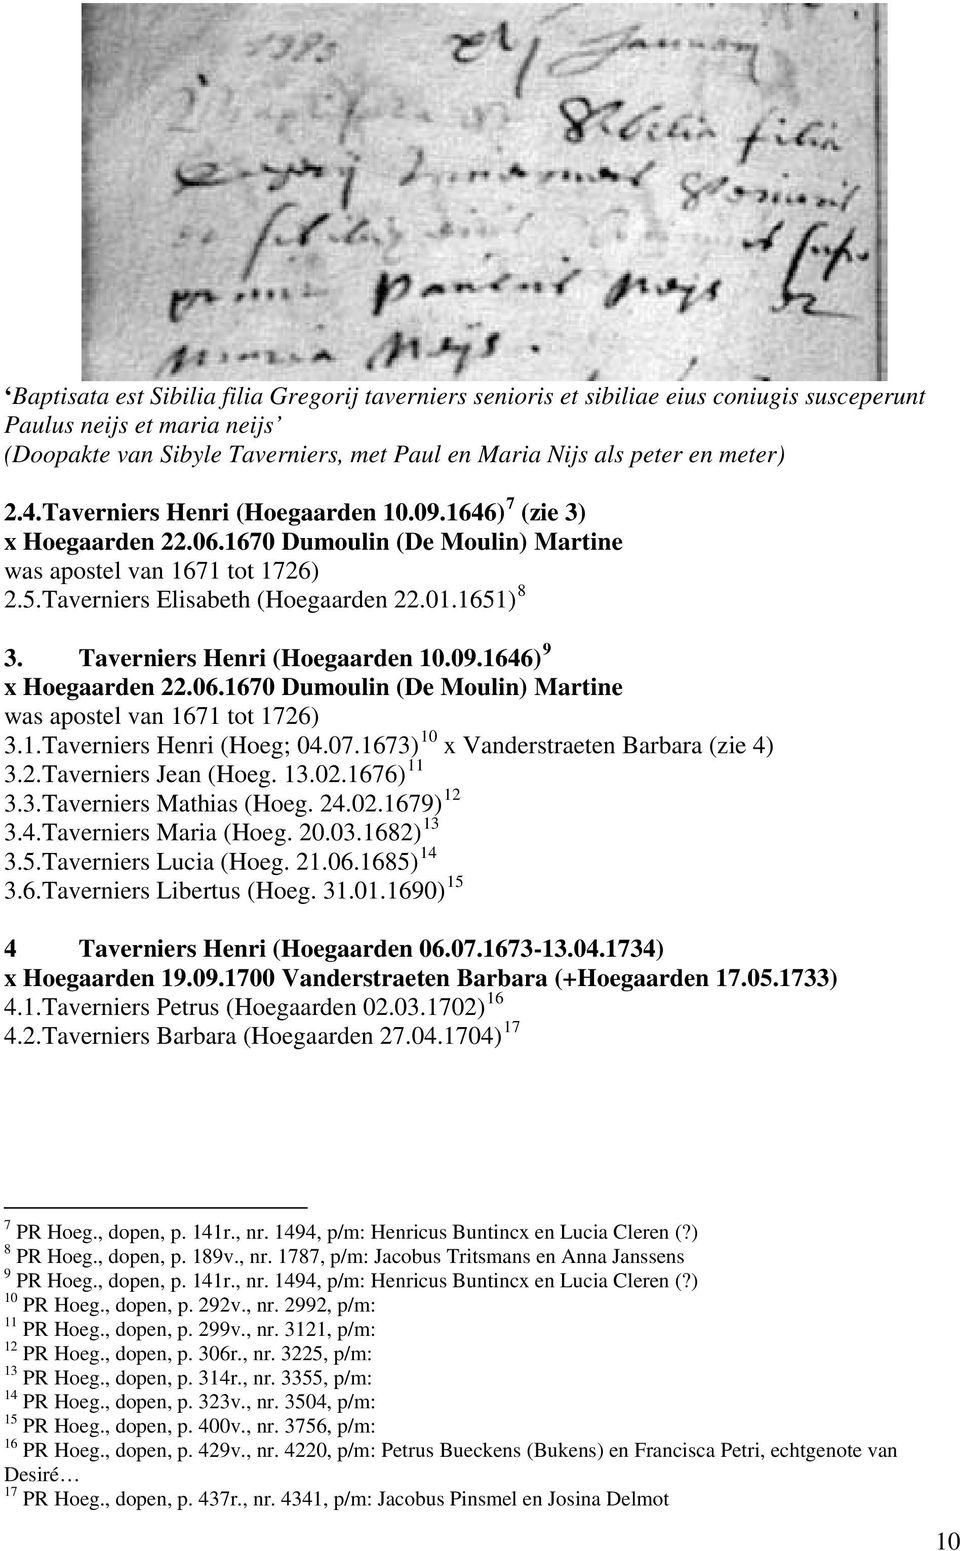 Taverniers Henri (Hoegaarden 10.09.1646) 9 x Hoegaarden 22.06.1670 Dumoulin (De Moulin) Martine was apostel van 1671 tot 1726) 10 3.1.Taverniers Henri (Hoeg; 04.07.